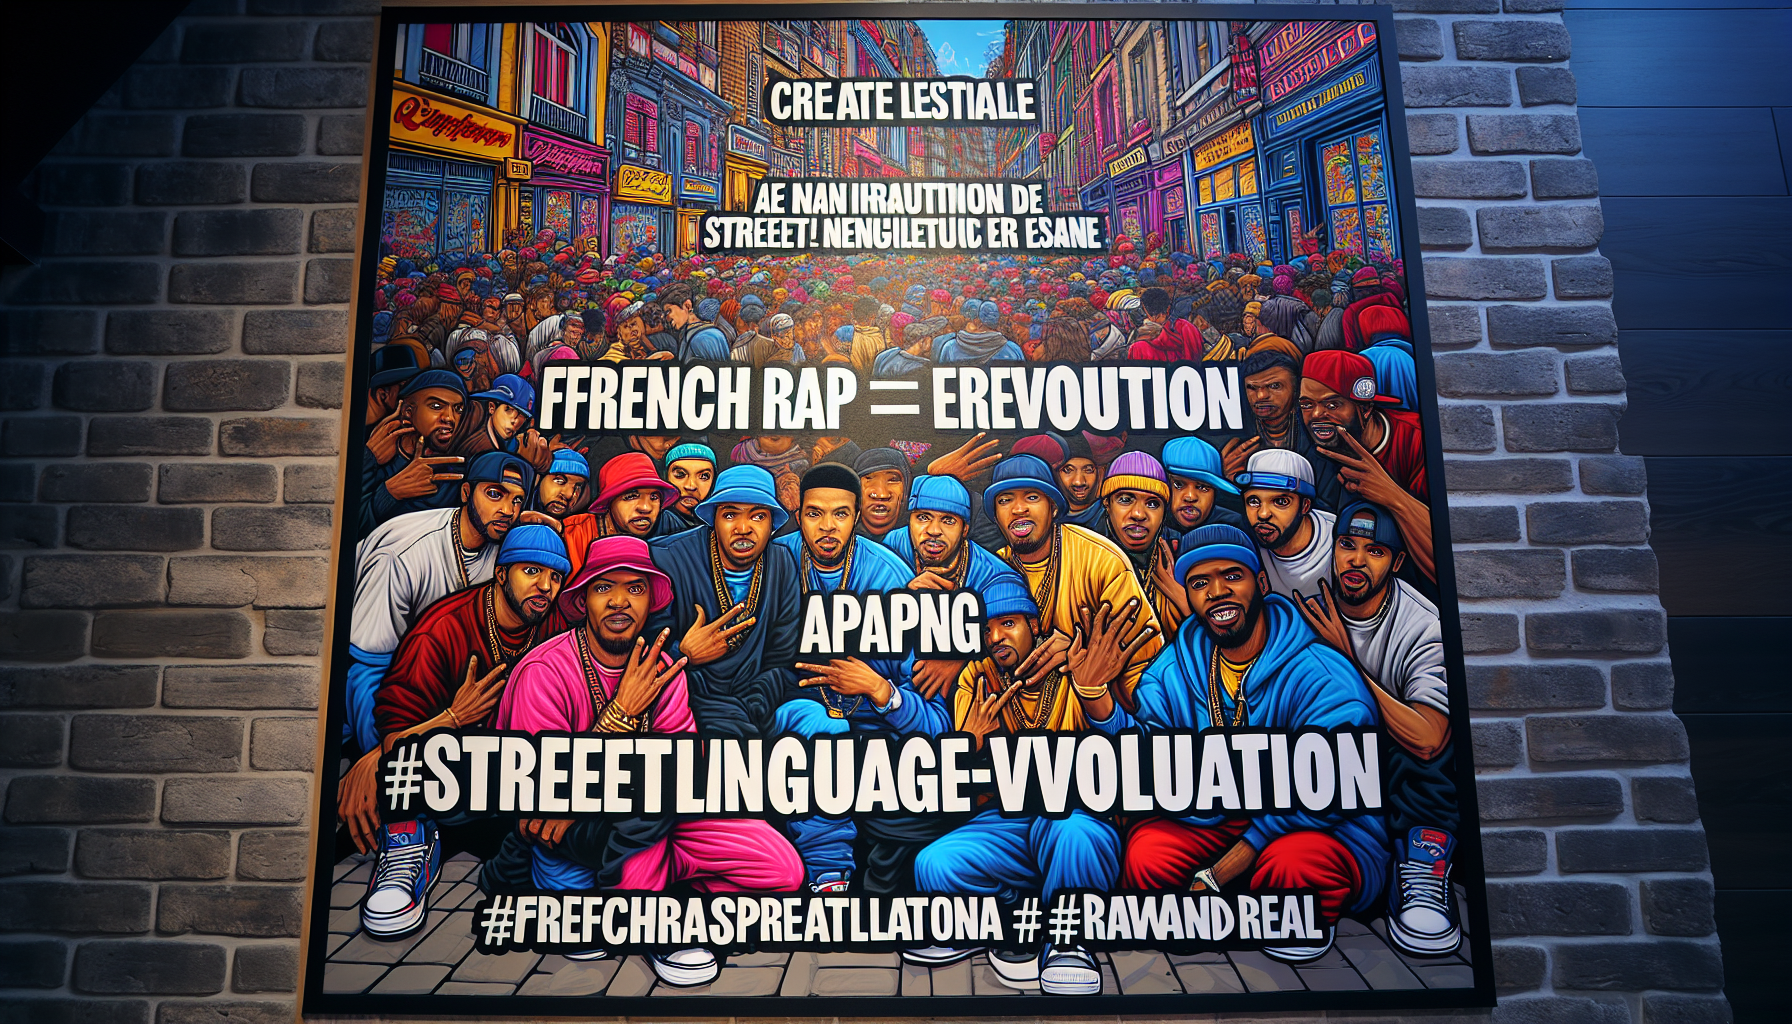 découvrez comment le rap français révolutionne le langage des rues à travers une analyse captivante et percutante.